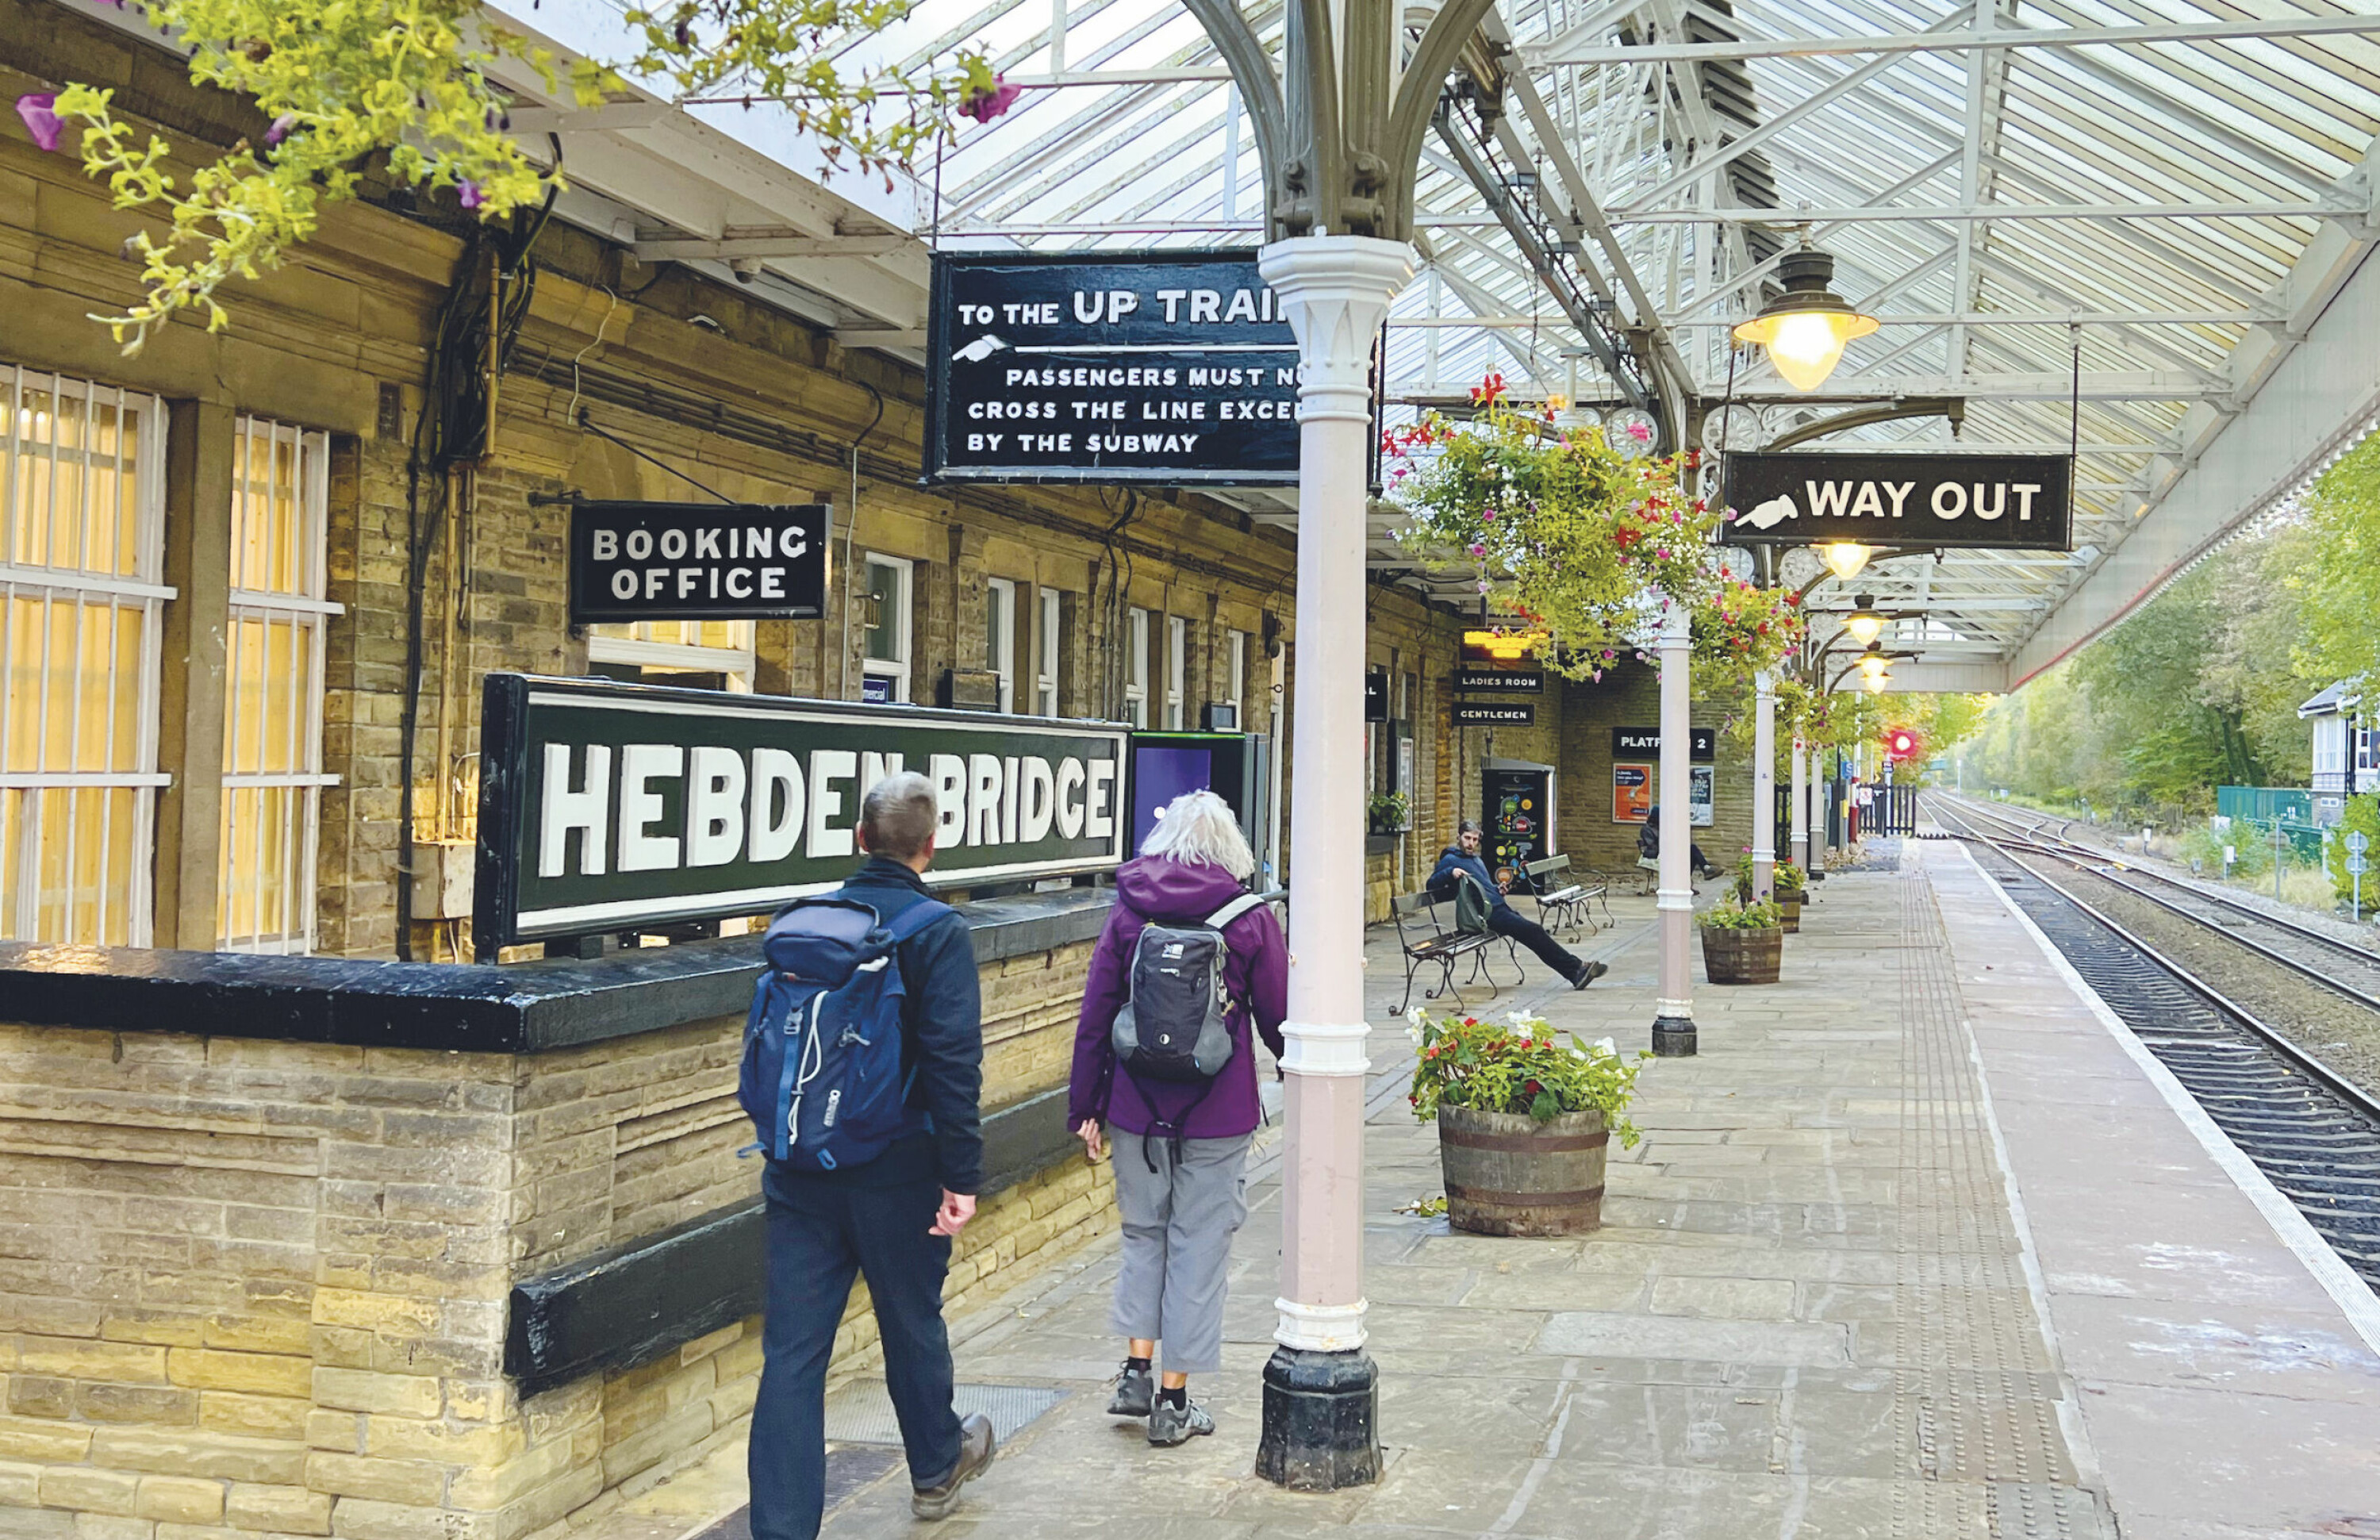 Hebden Bridge stasjon ligger omtrent midtveis på toglinja mellom Leeds og Manchester Victoria